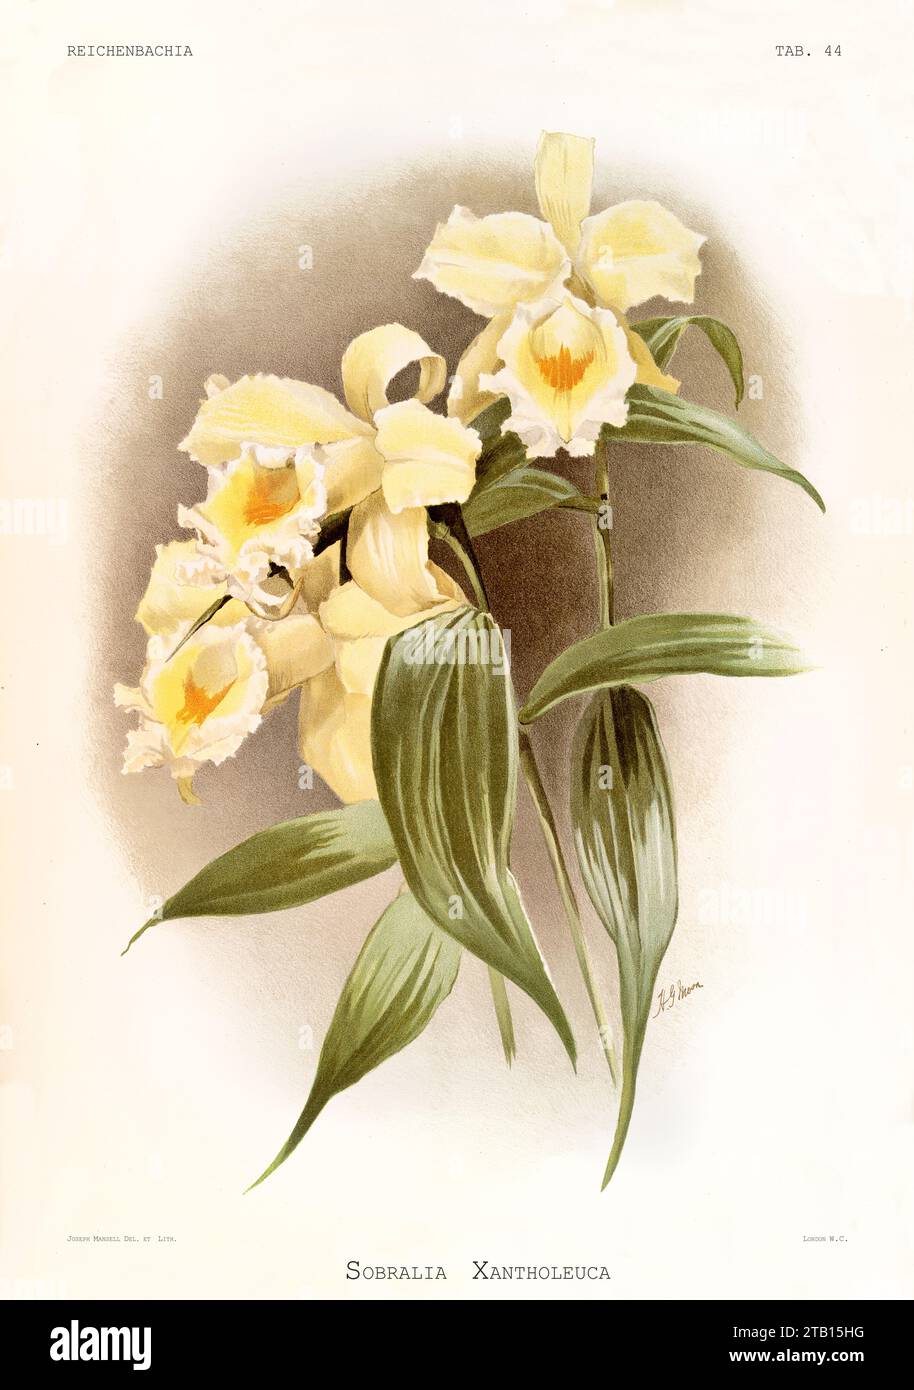 Vieille illustration de Sobralia blanc jaune (Sobralia xantholeuca). Reichenbachia, de F. Sander. St. Albans, Royaume-Uni, 1888 - 1894 Banque D'Images